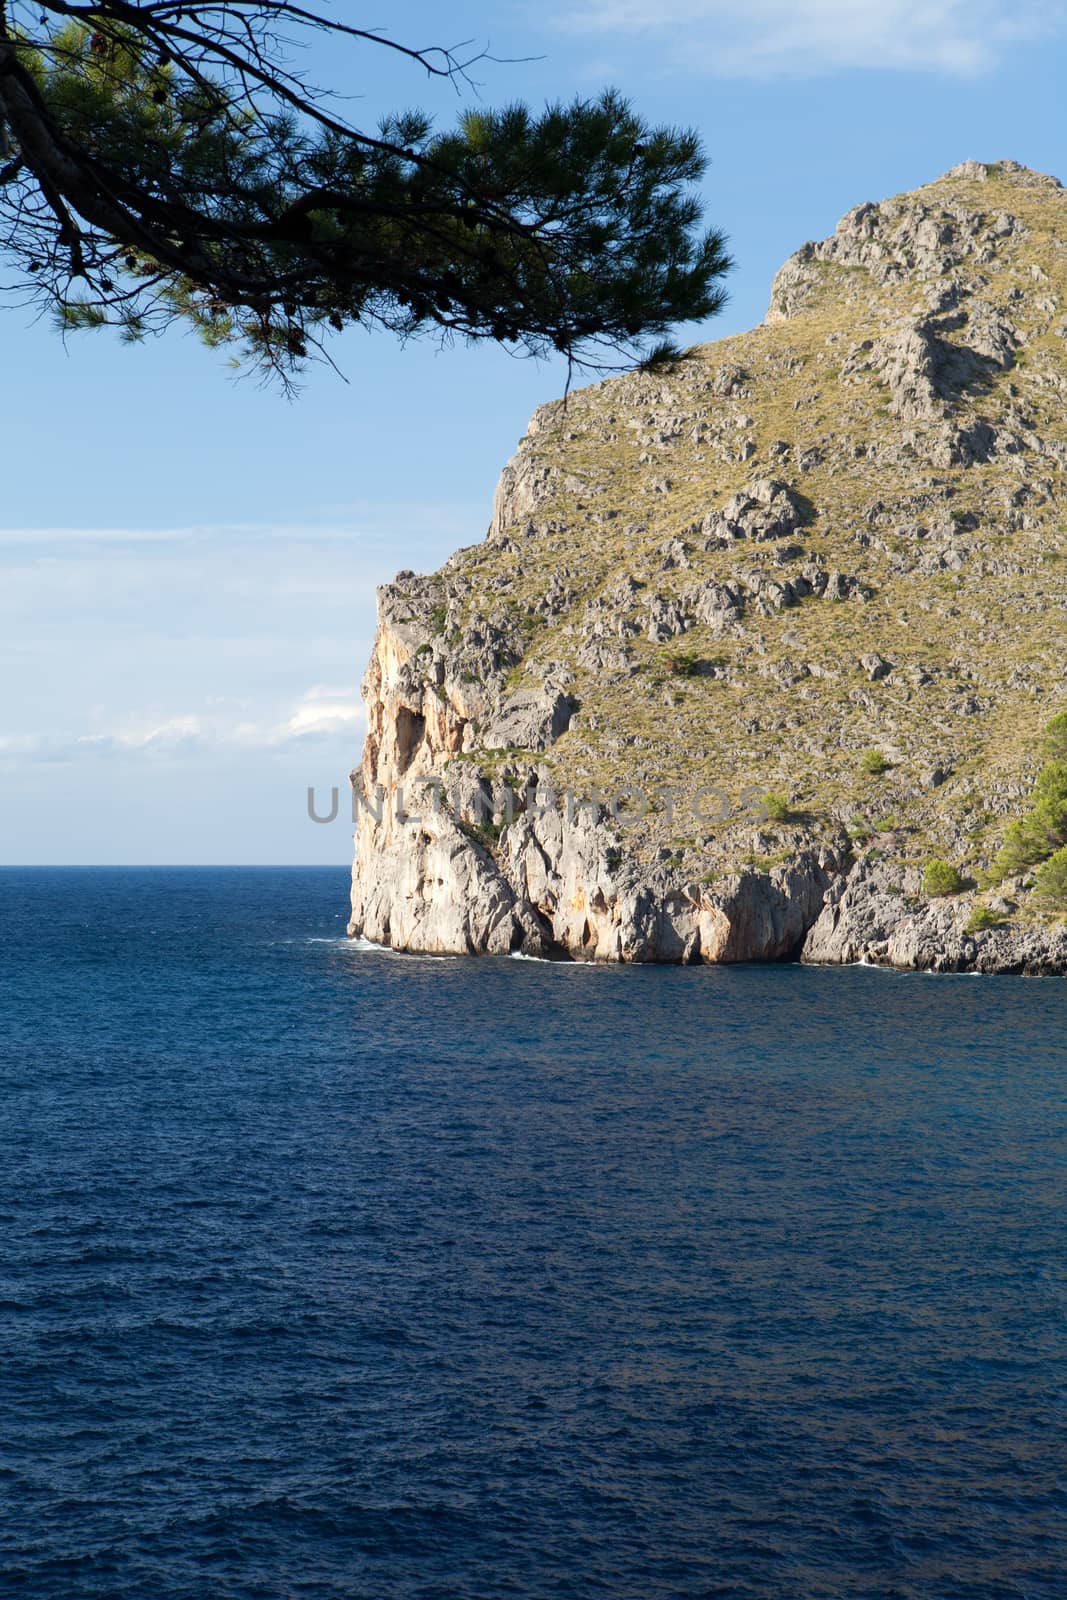 Torrent de Pareis - Sa Calobra bay in Majorca Spain by wjarek